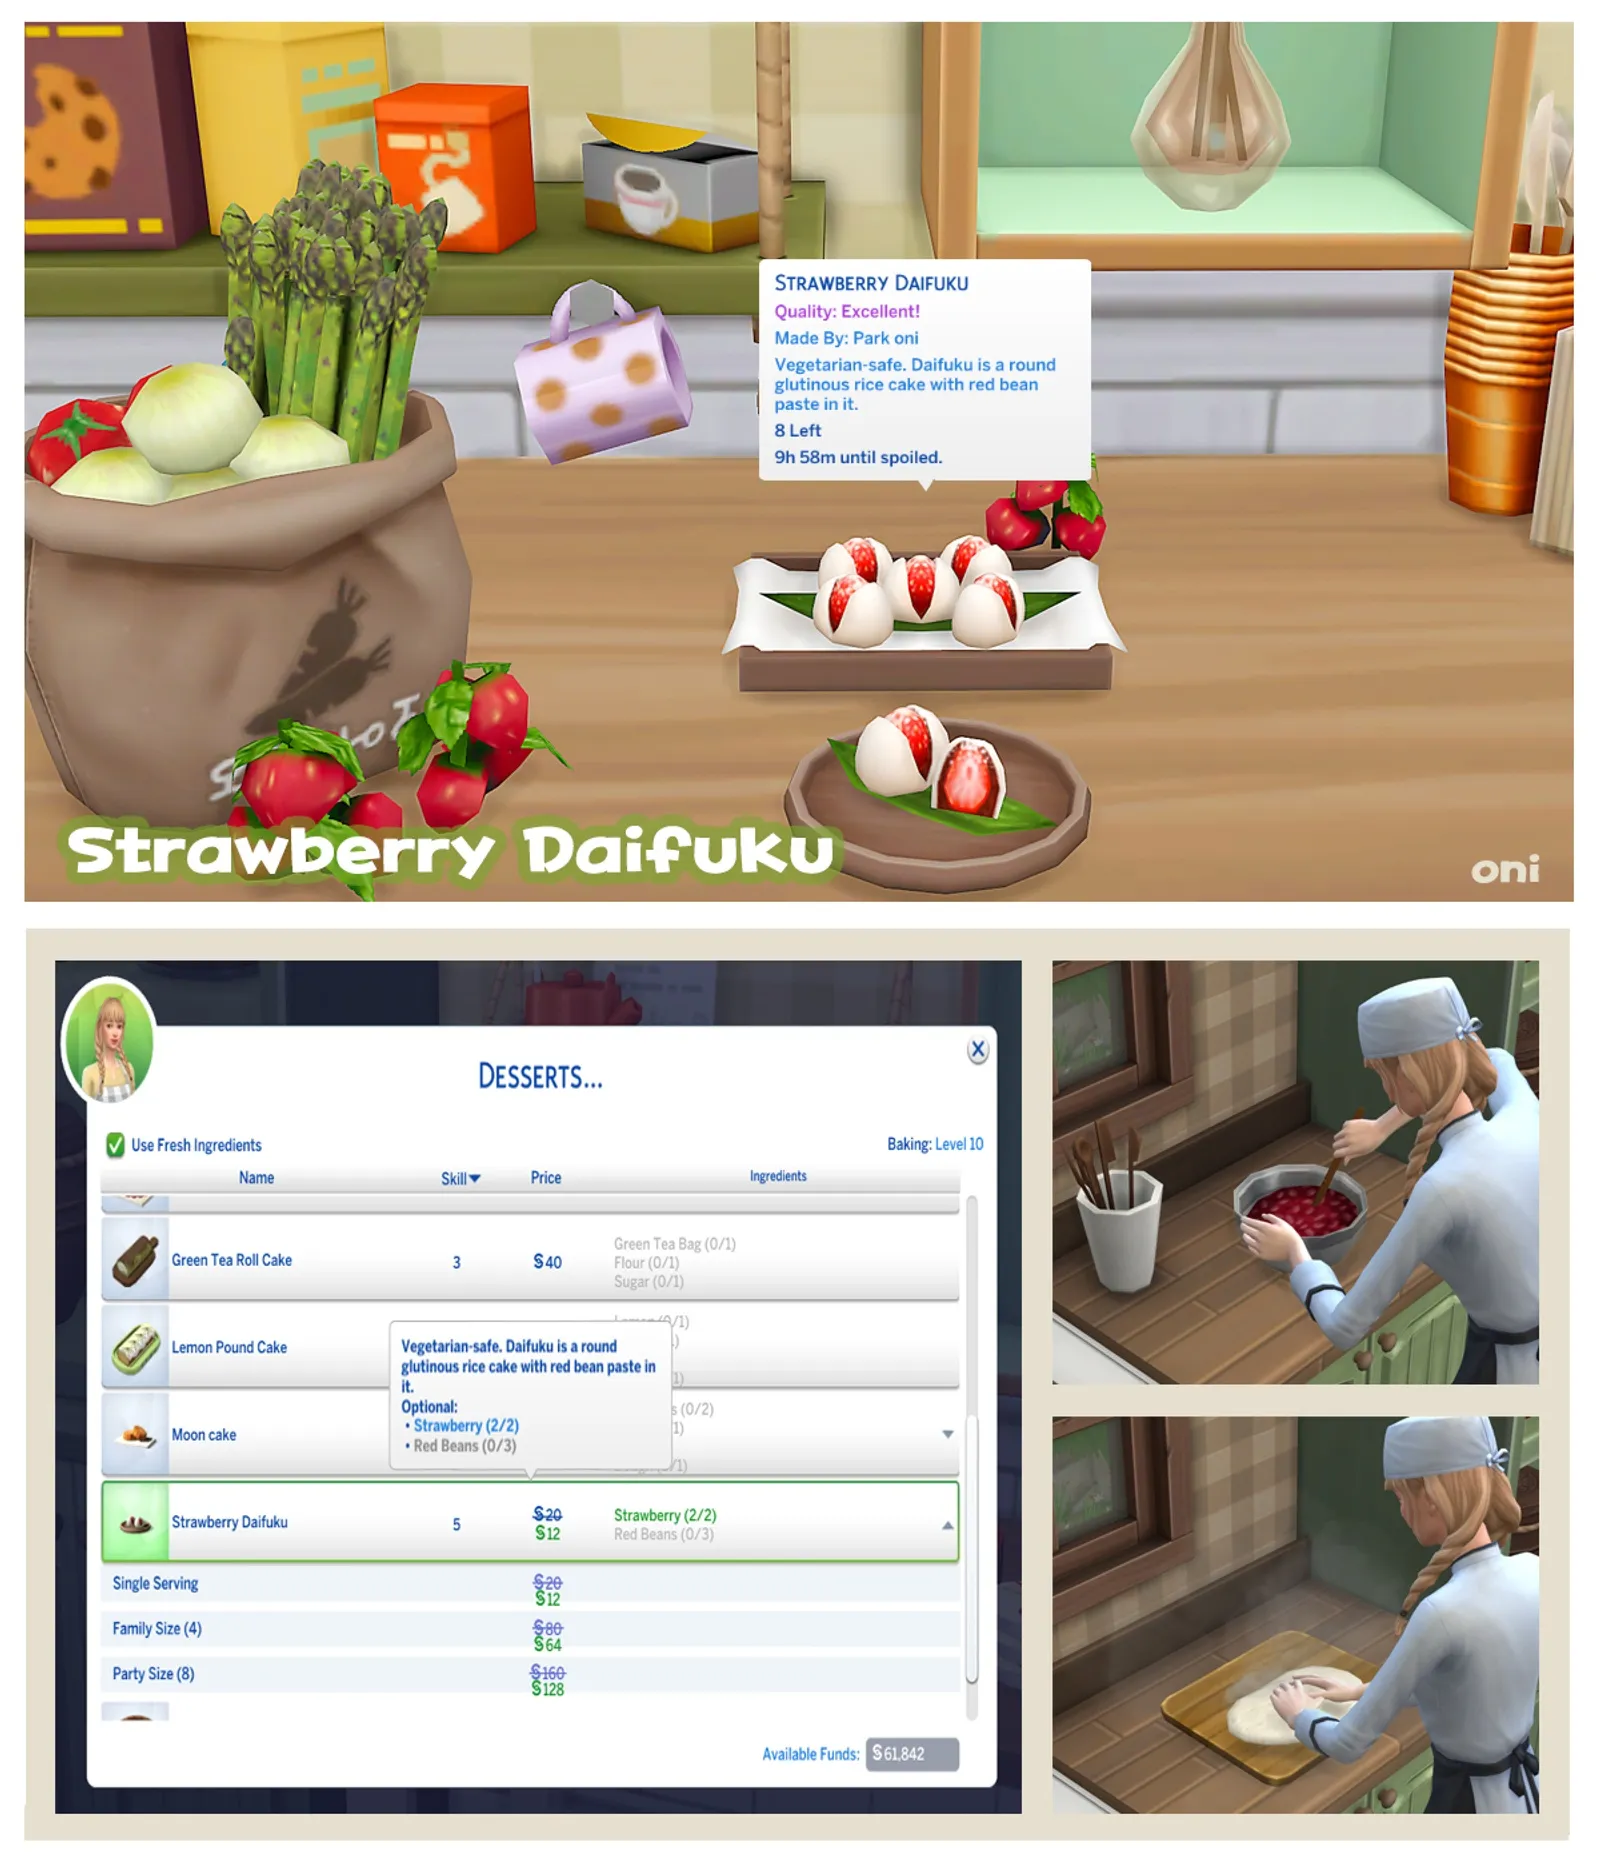 Strawberry Daifuku